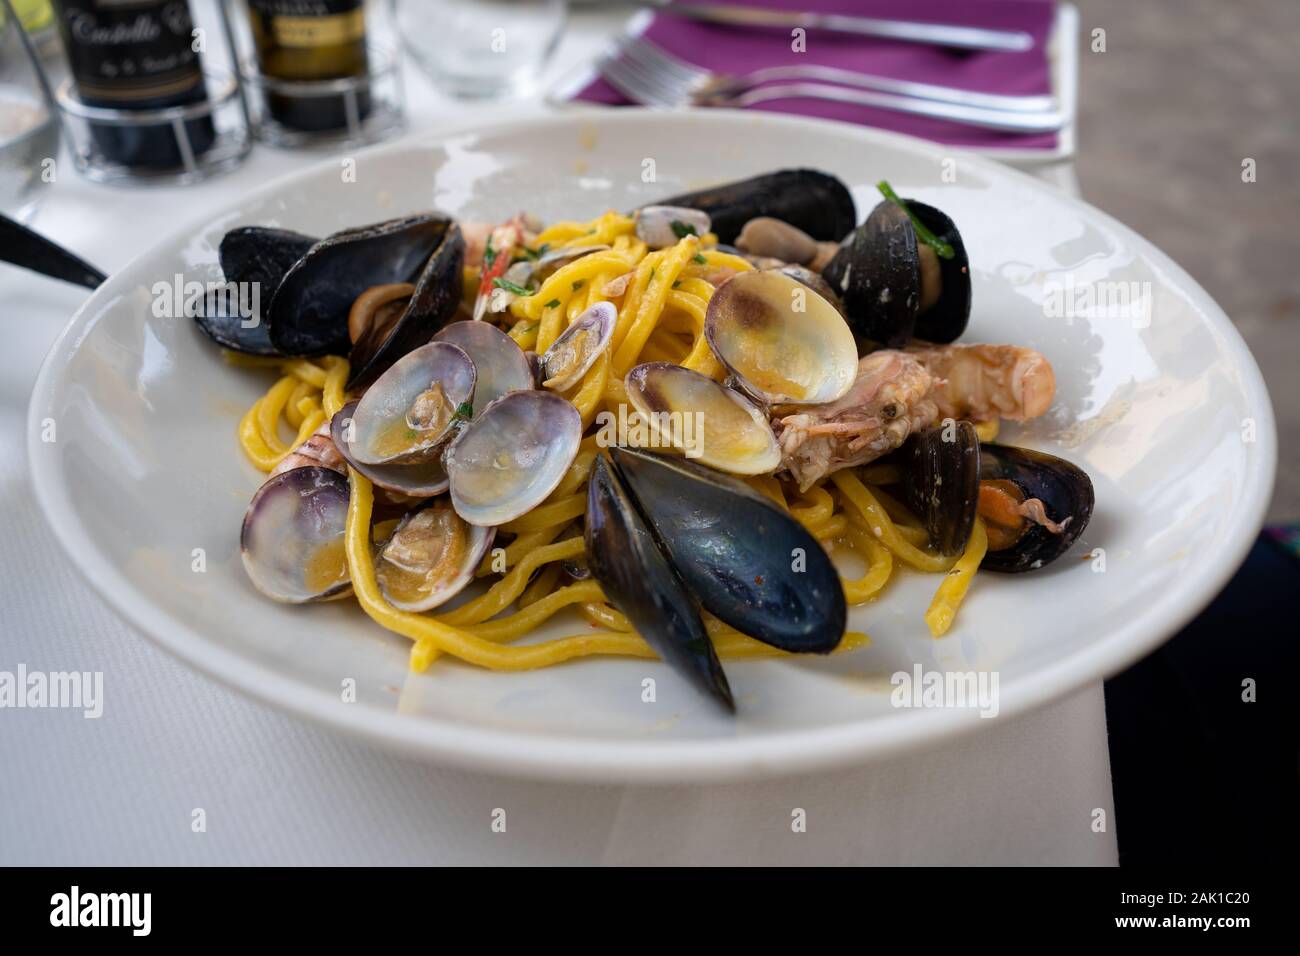 Les pâtes italiennes avec fruits de mer - moules, vongole et les crevettes. Libre de pâtes aux fruits de mer servi dans un restaurant italien. Une cuisine méditerranéenne. Banque D'Images